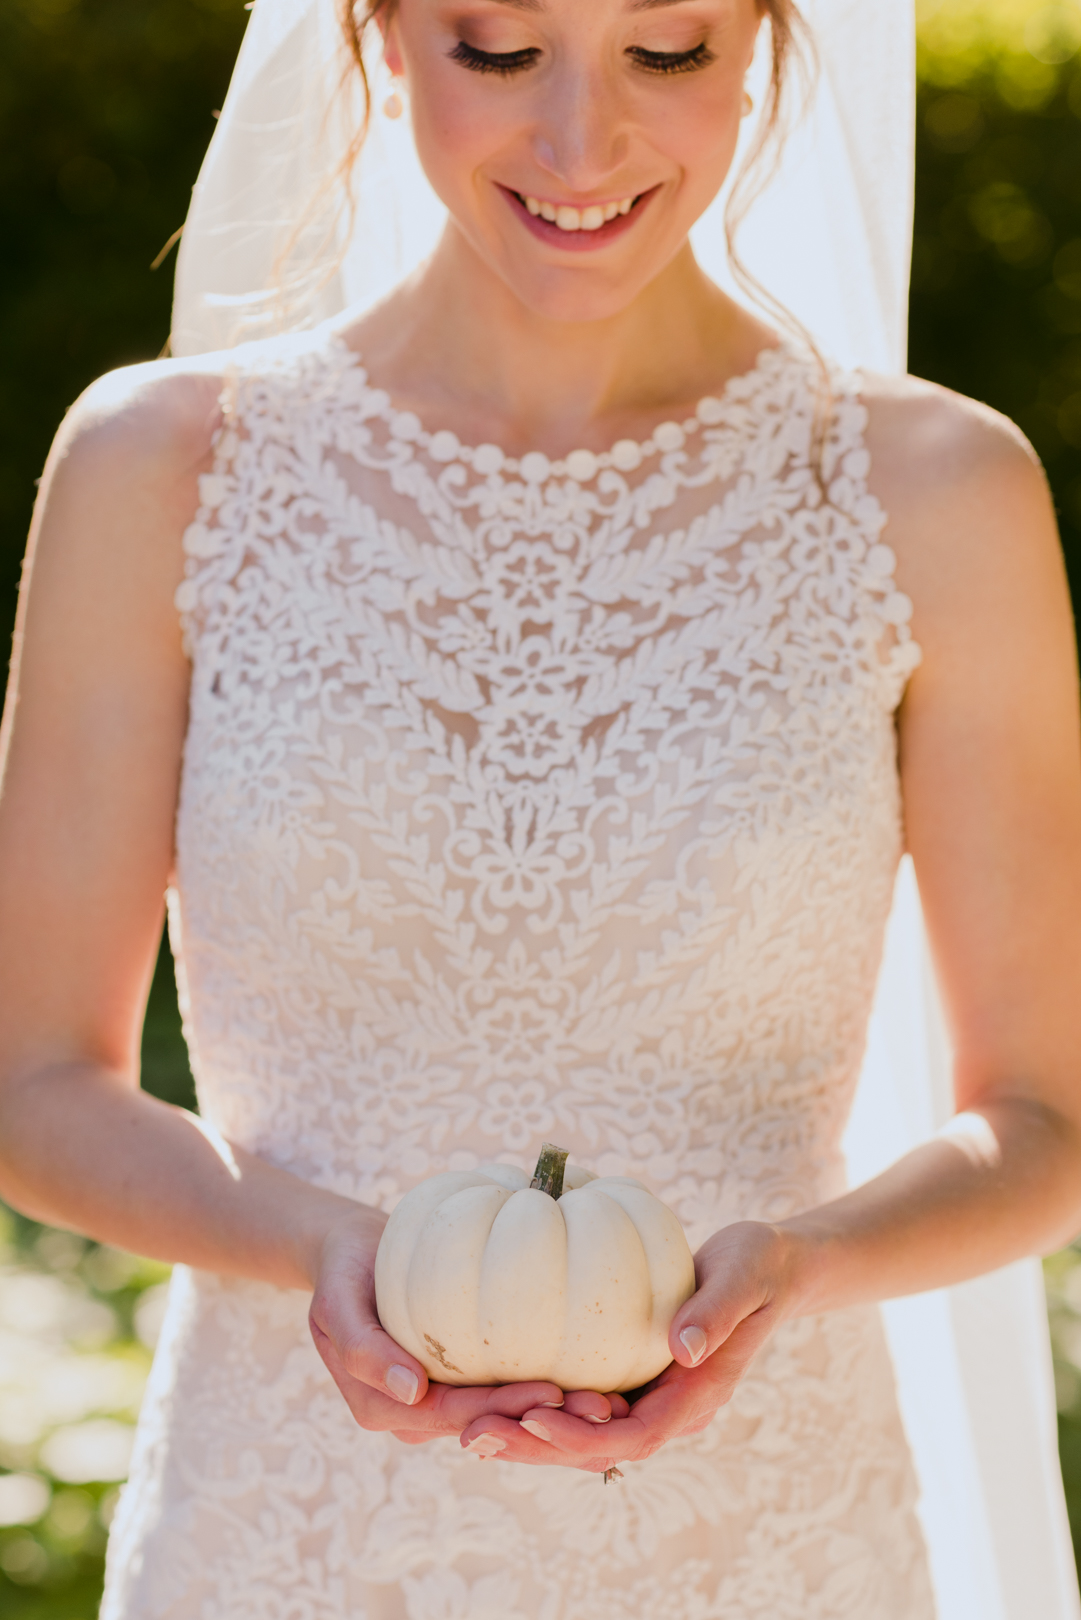 bride holding mini white pumpkin